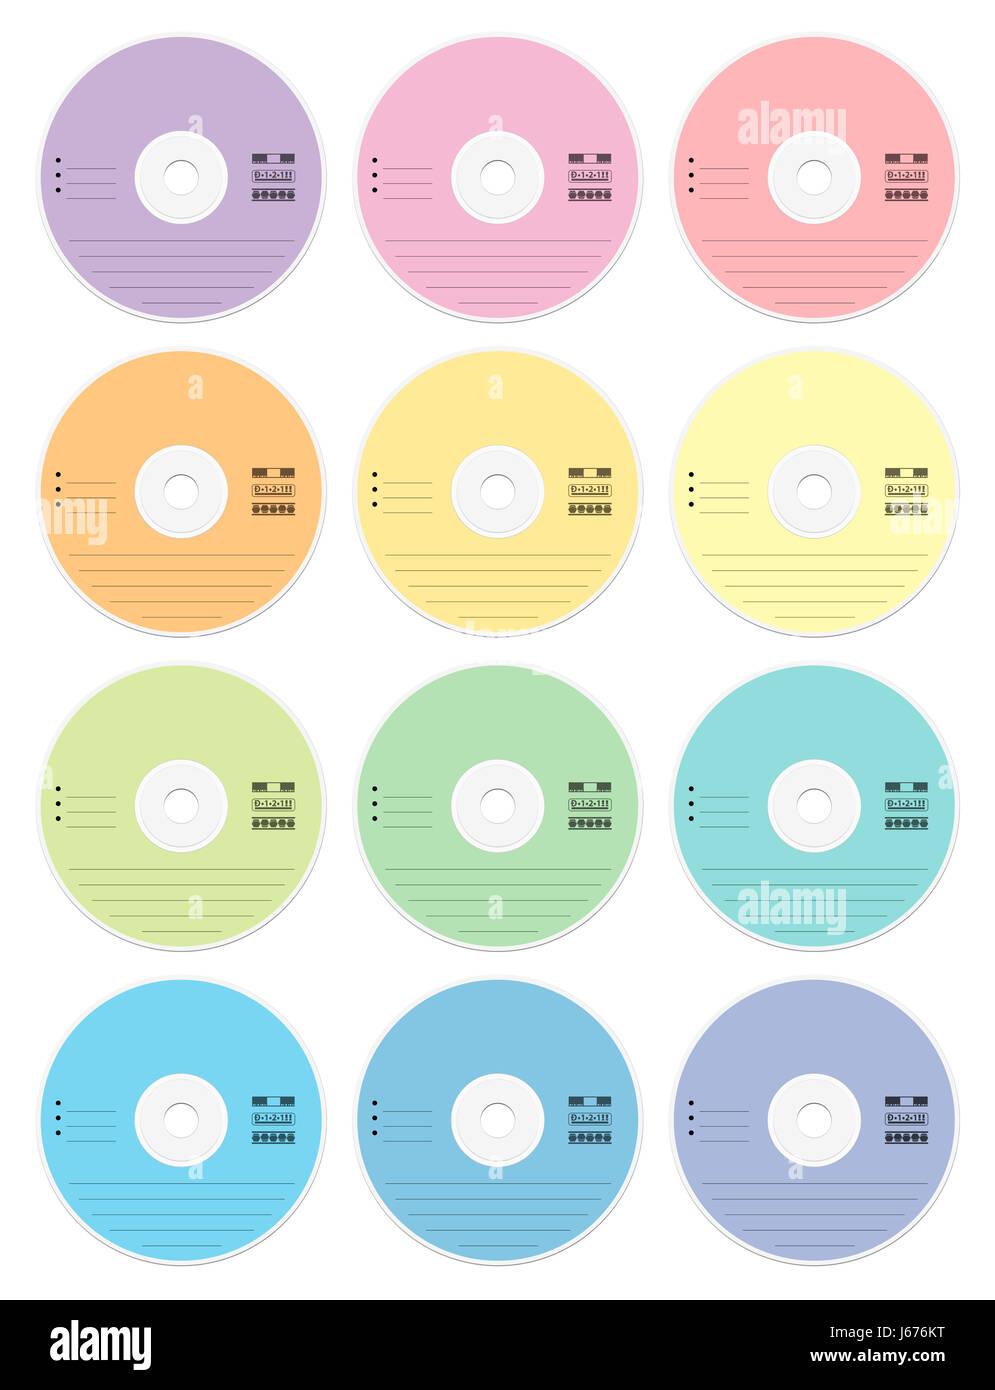 CD vuoti - colori pastello serie di dodici cd o dvd - supporti esterni di raccolta dei dati per la memorizzazione di musica, film, foto, documenti. Foto Stock